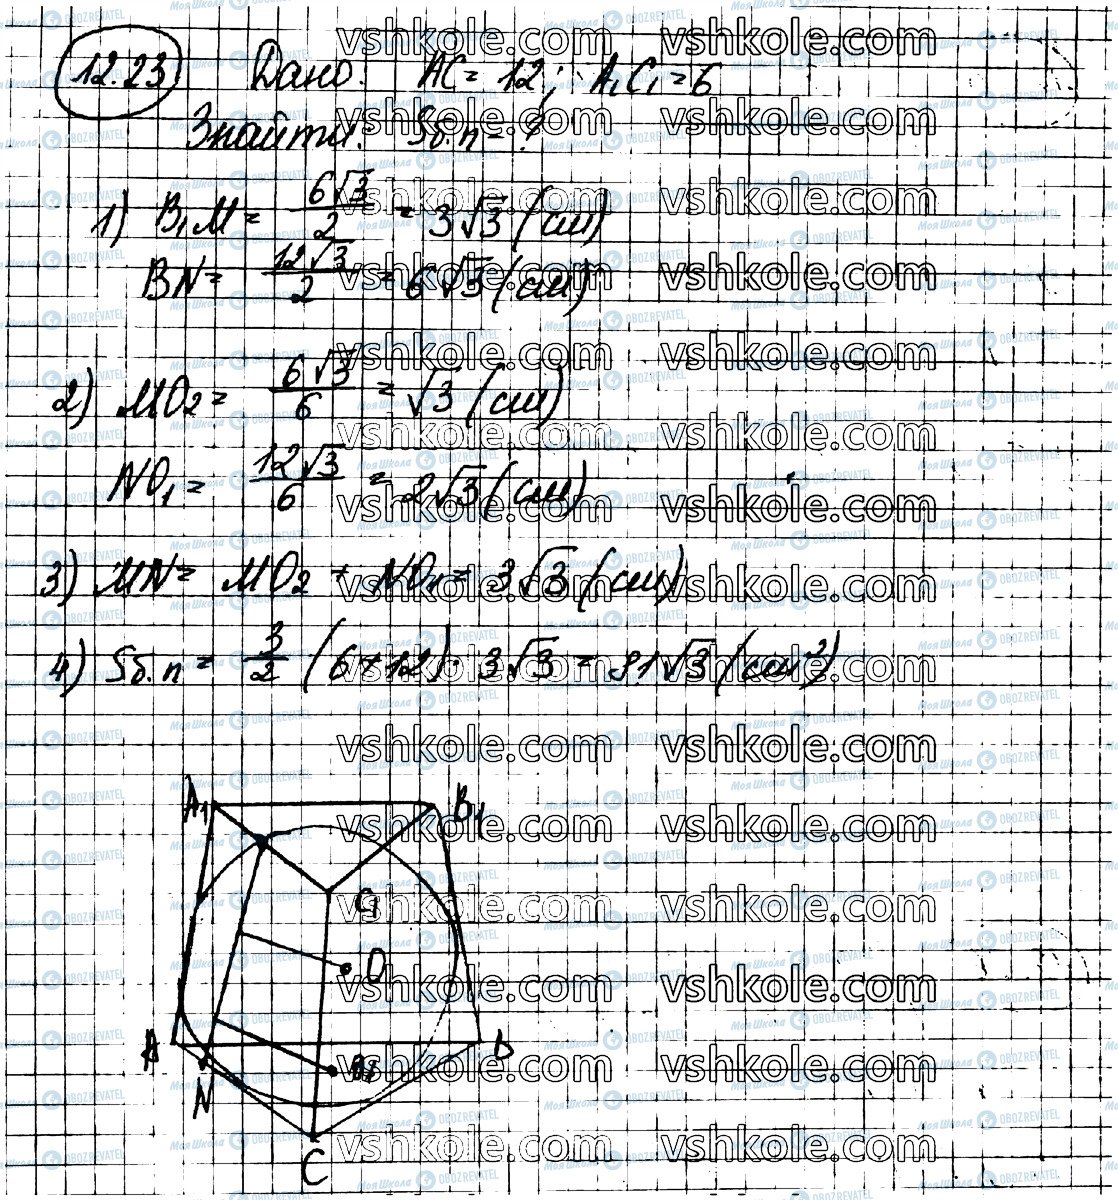 ГДЗ Геометрия 11 класс страница 23